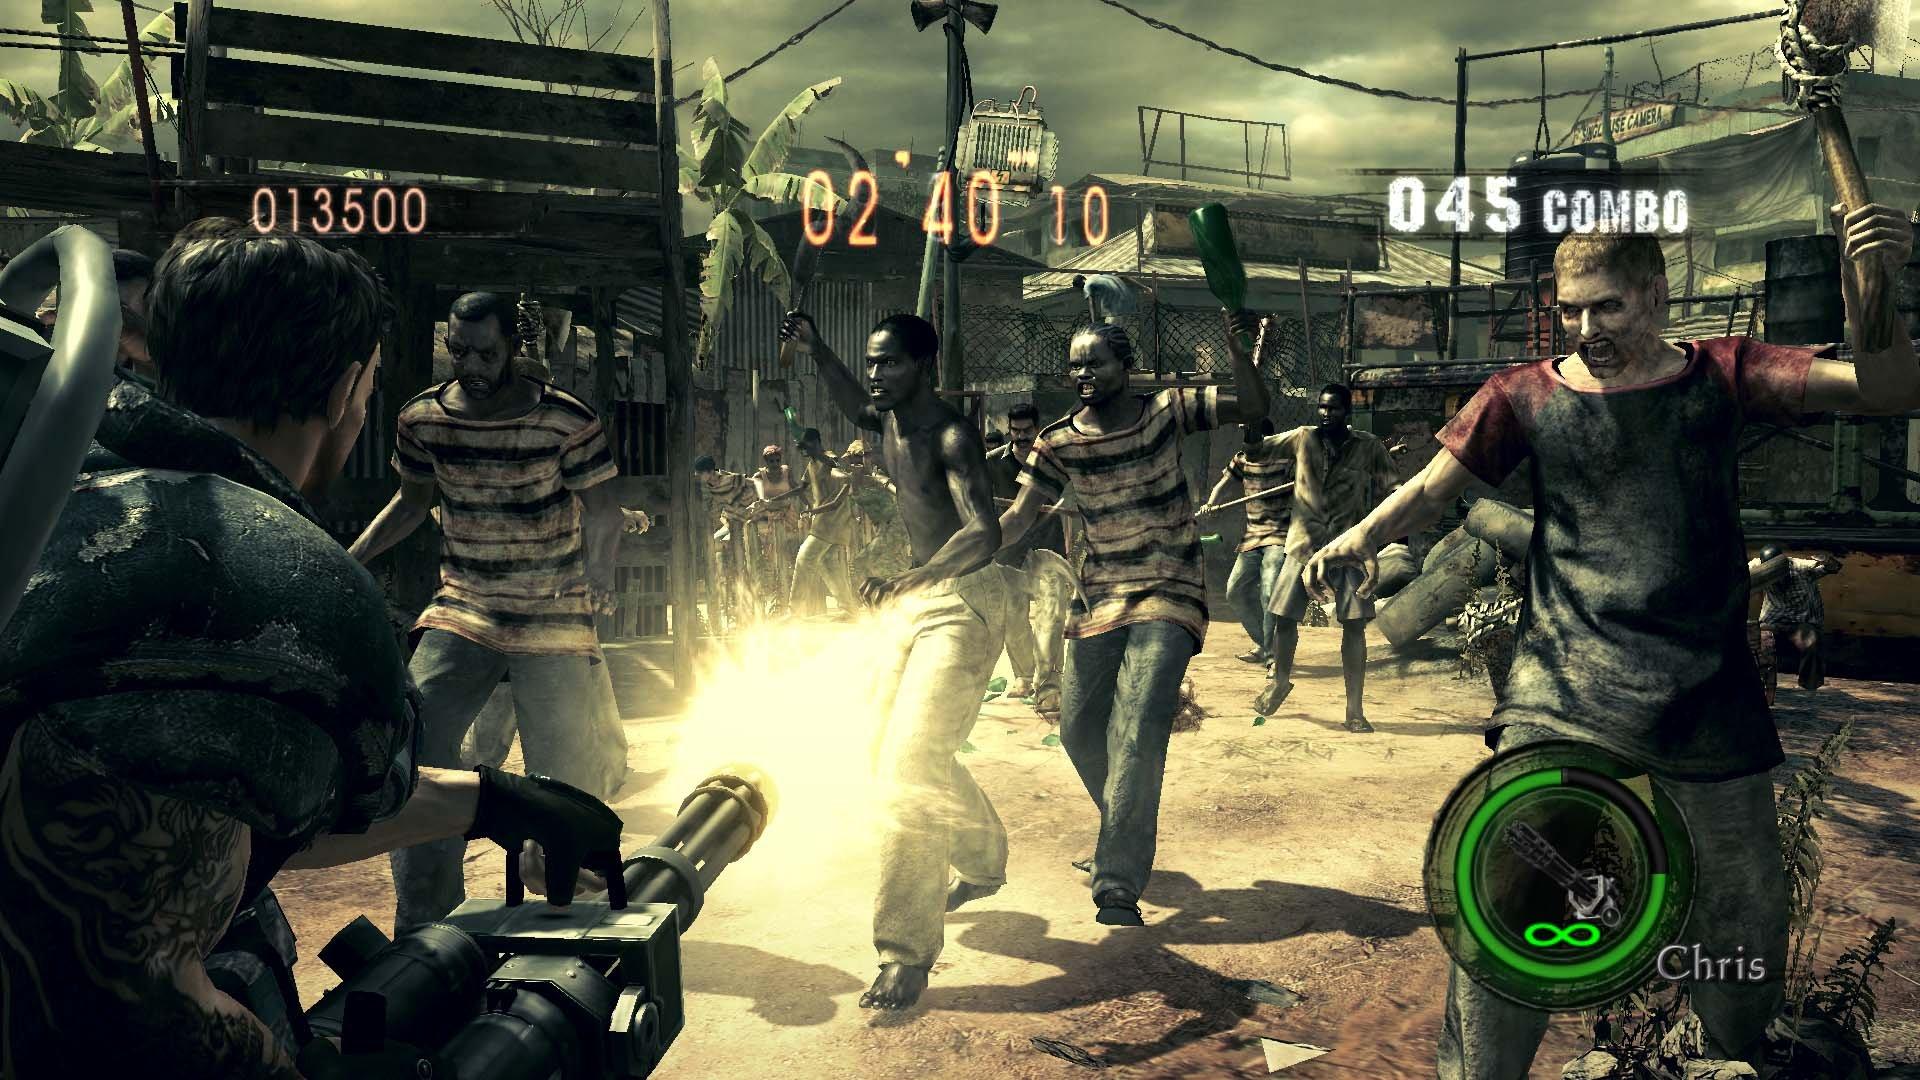 GameStop HD PlayStation | PlayStation - 4 Resident 4 5 | Evil